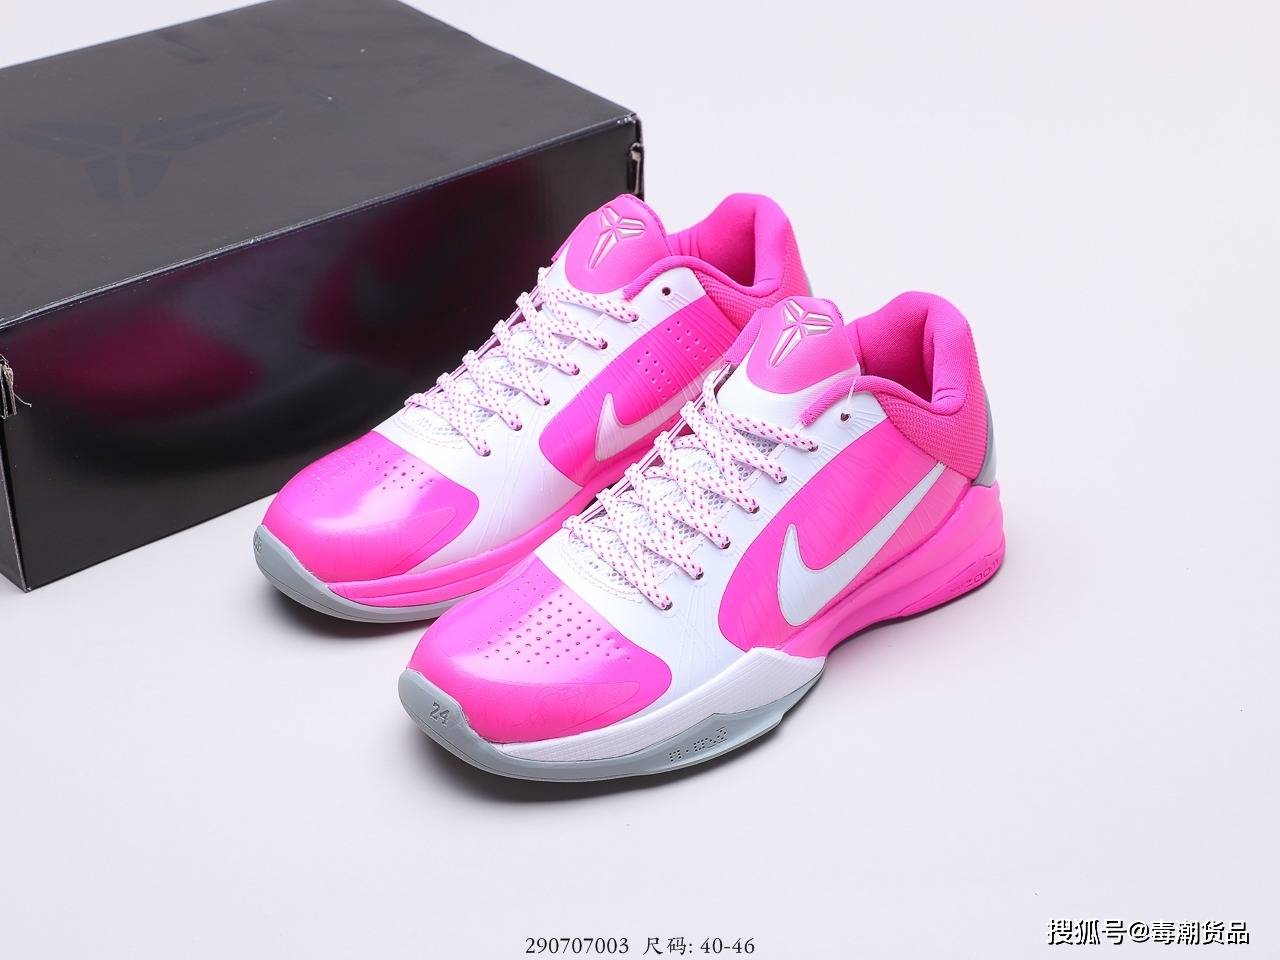 Nike Kobe 5 Protro CD4991-500 Release Date | SneakerNews.com